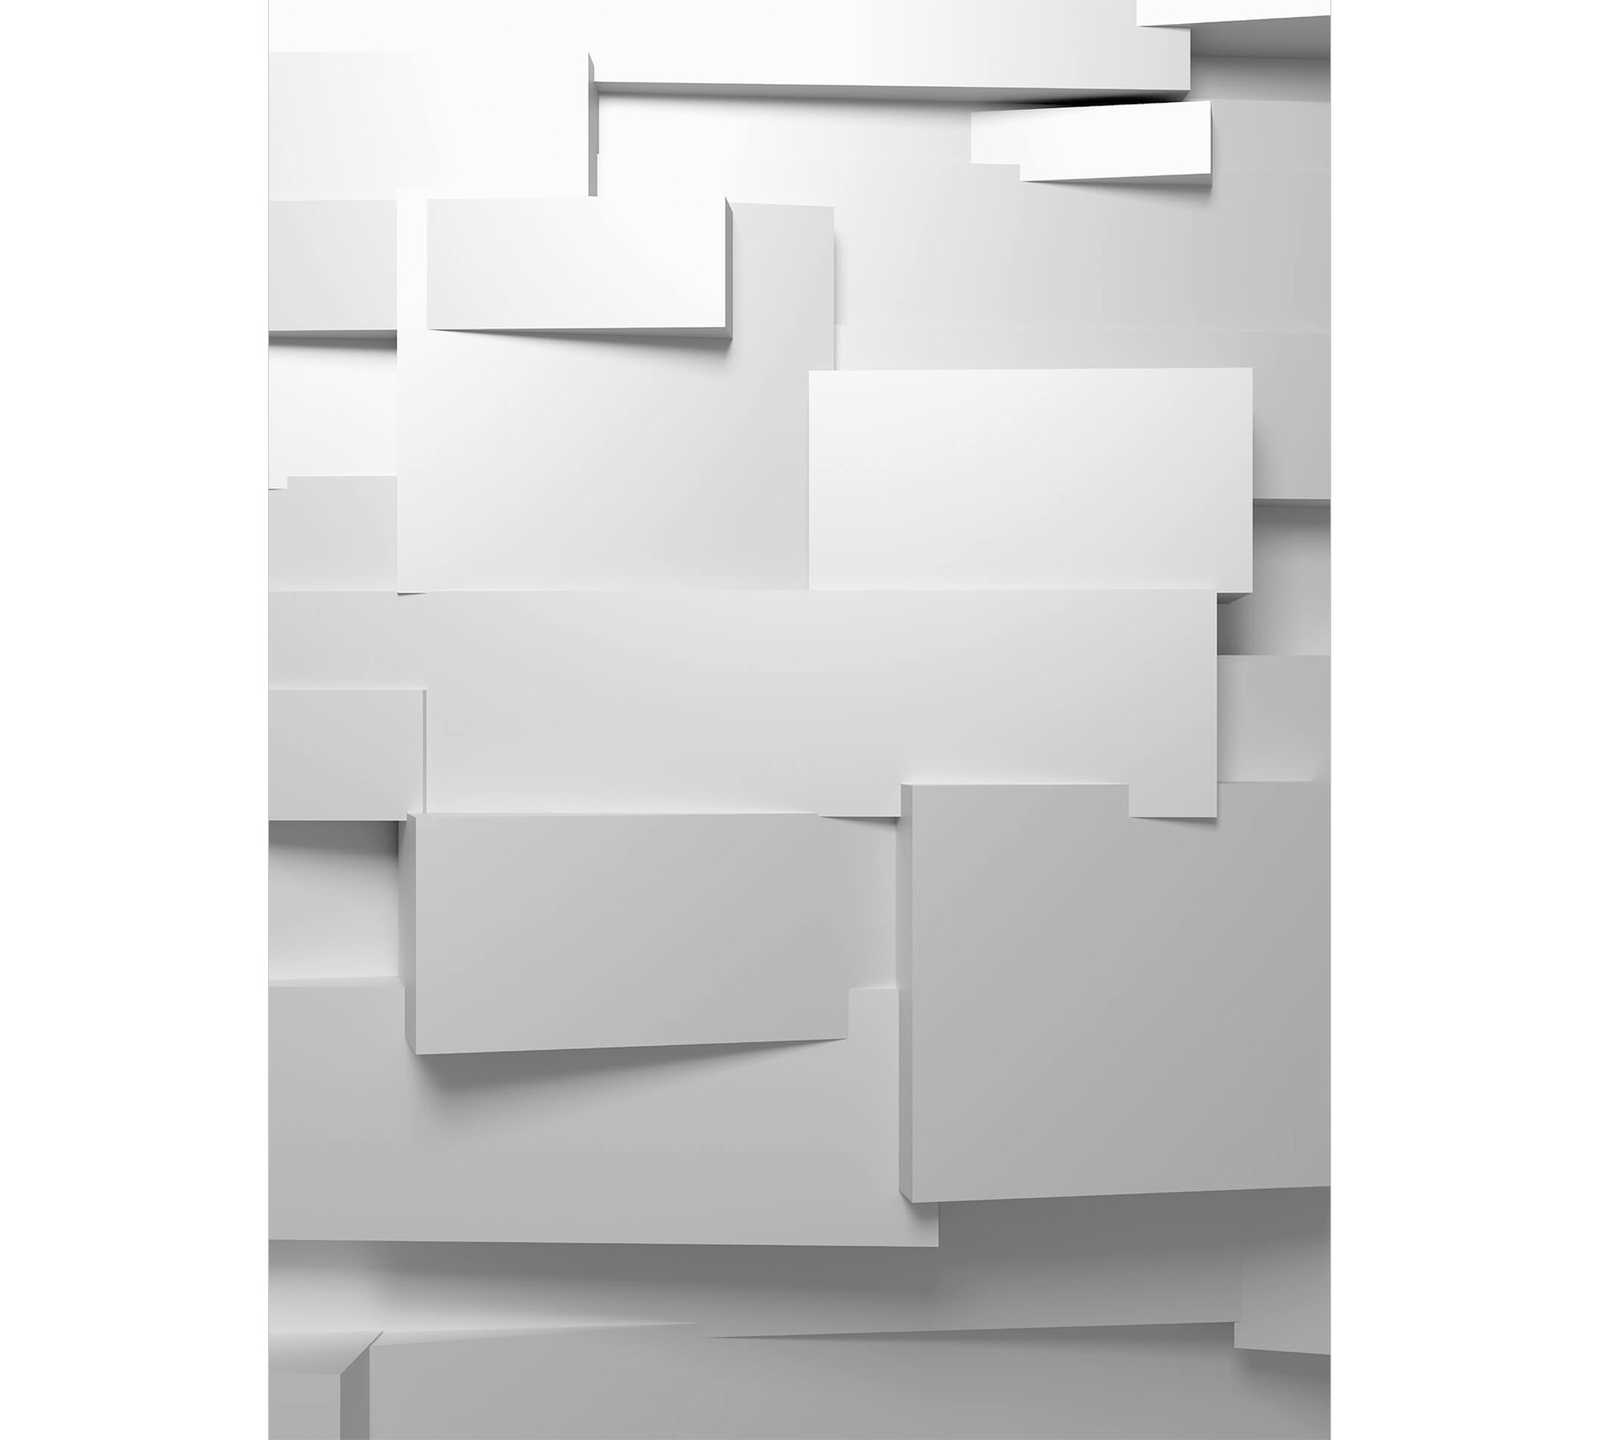 Mural de pared 3D Efecto gráfico, formato vertical - gris-blanco
